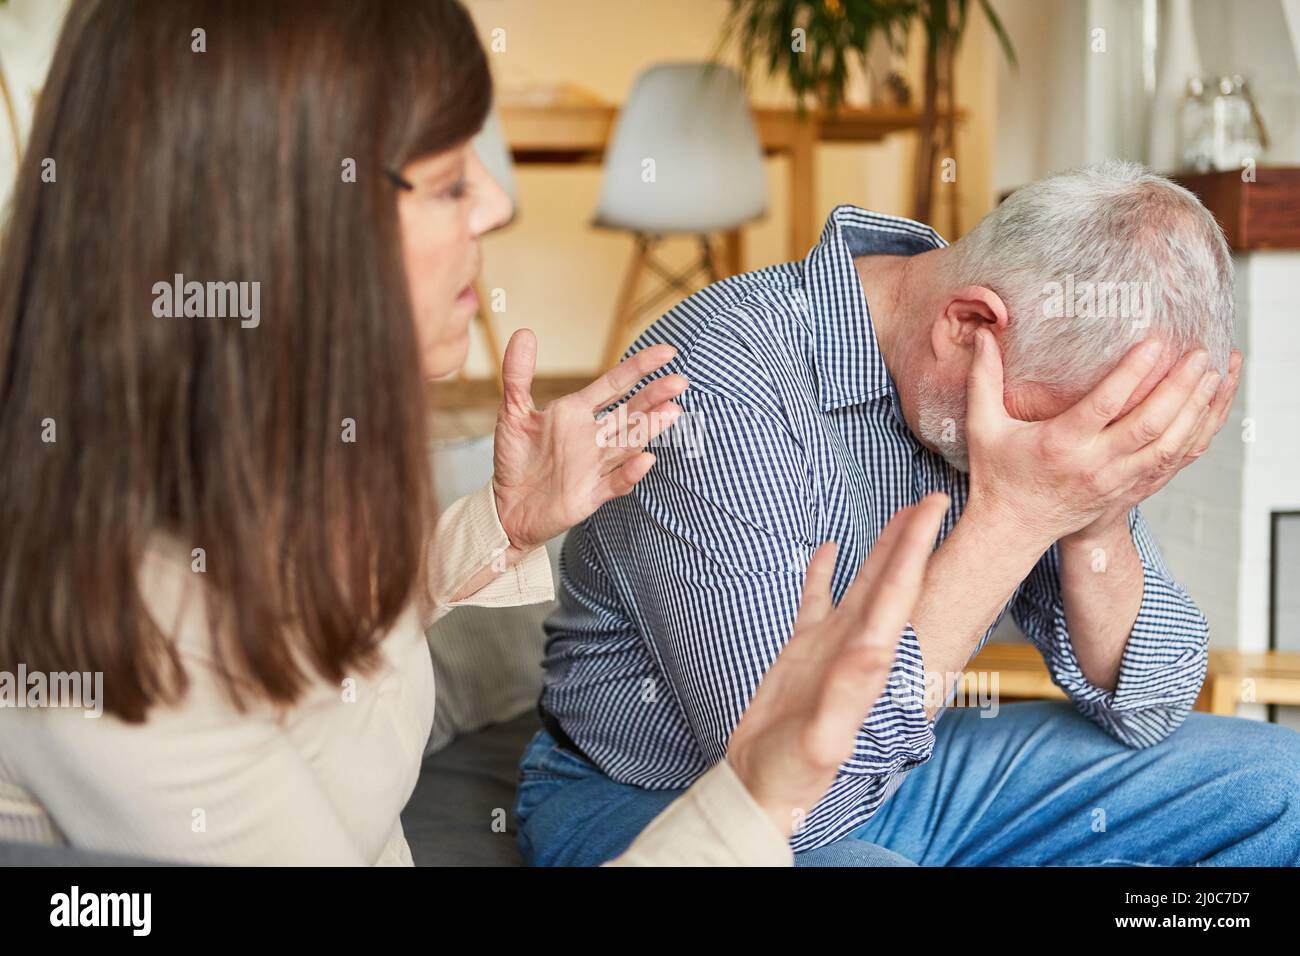 Eine ältere Frau und ein weinender Mann, der als Beziehungskonflikt argumentiert, werden geschimpft Stockfoto